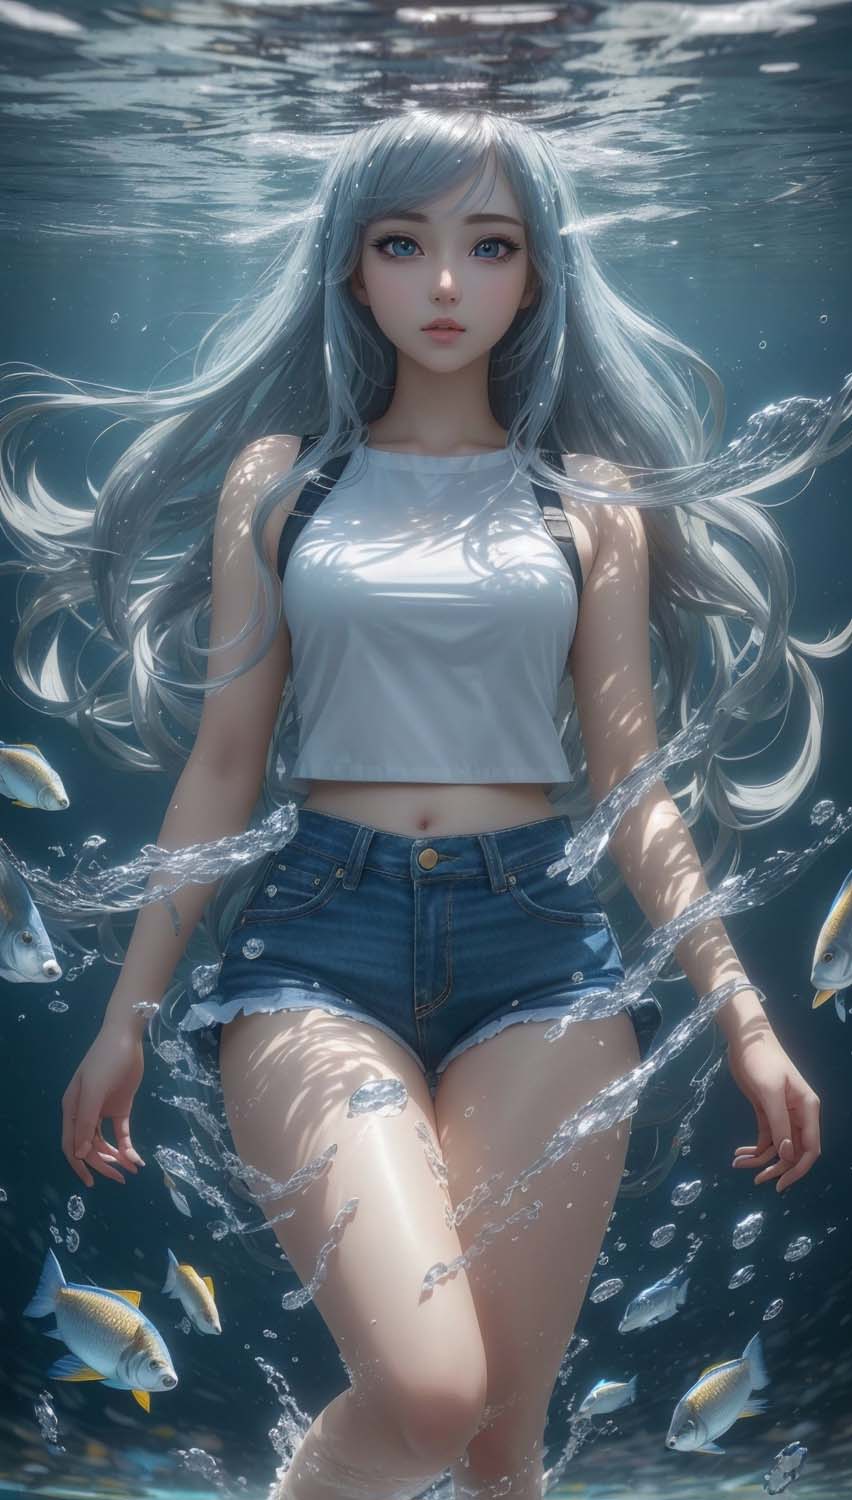 Underwater Girl iPhone Wallpaper 4K